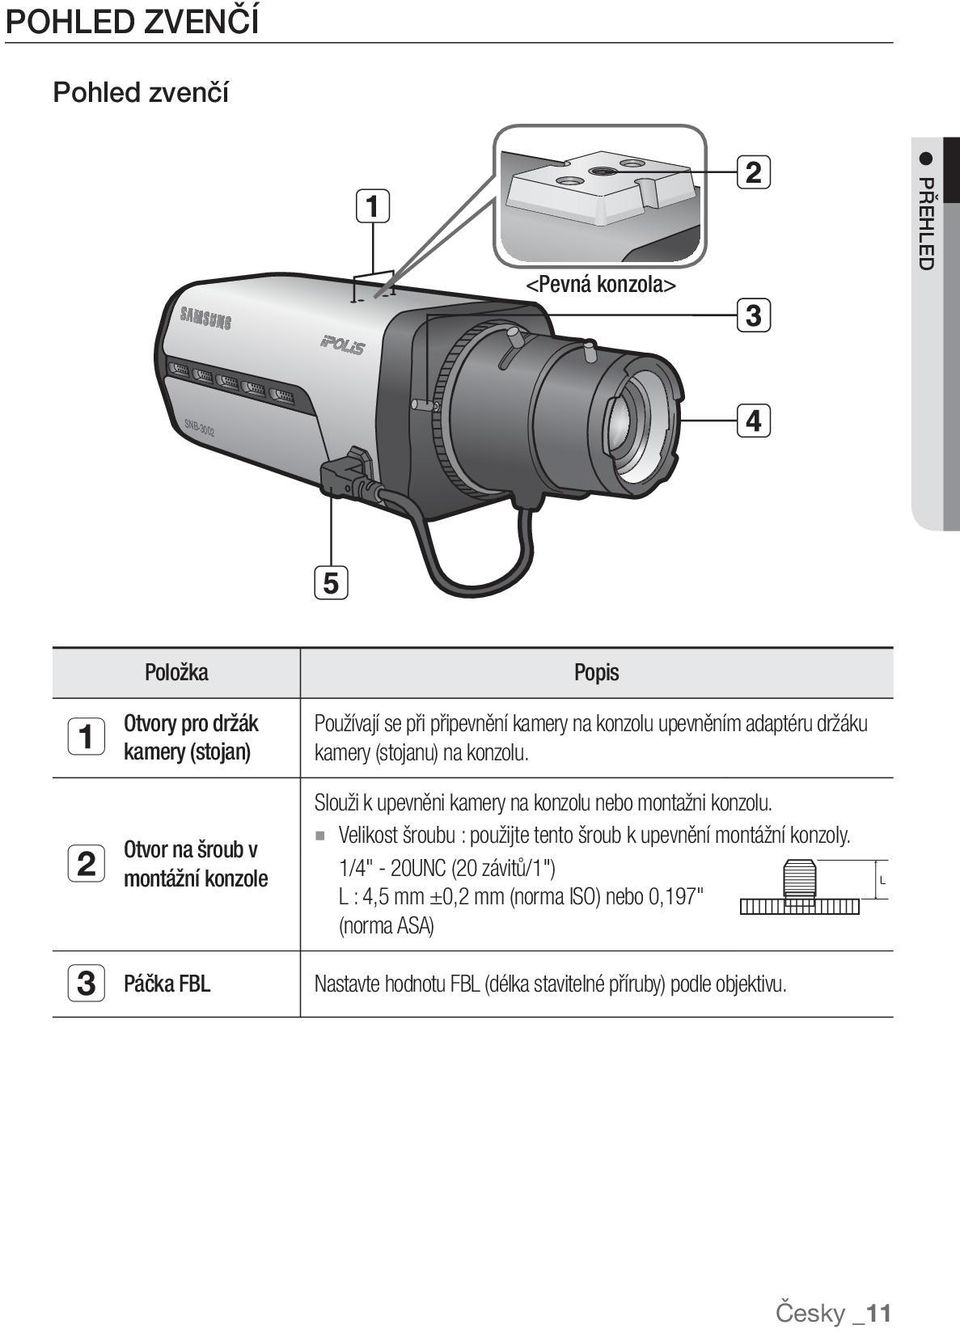 Slouži k upevněni kamery na konzolu nebo montažni konzolu. Velikost šroubu : použijte tento šroub k upevnění montážní konzoly.